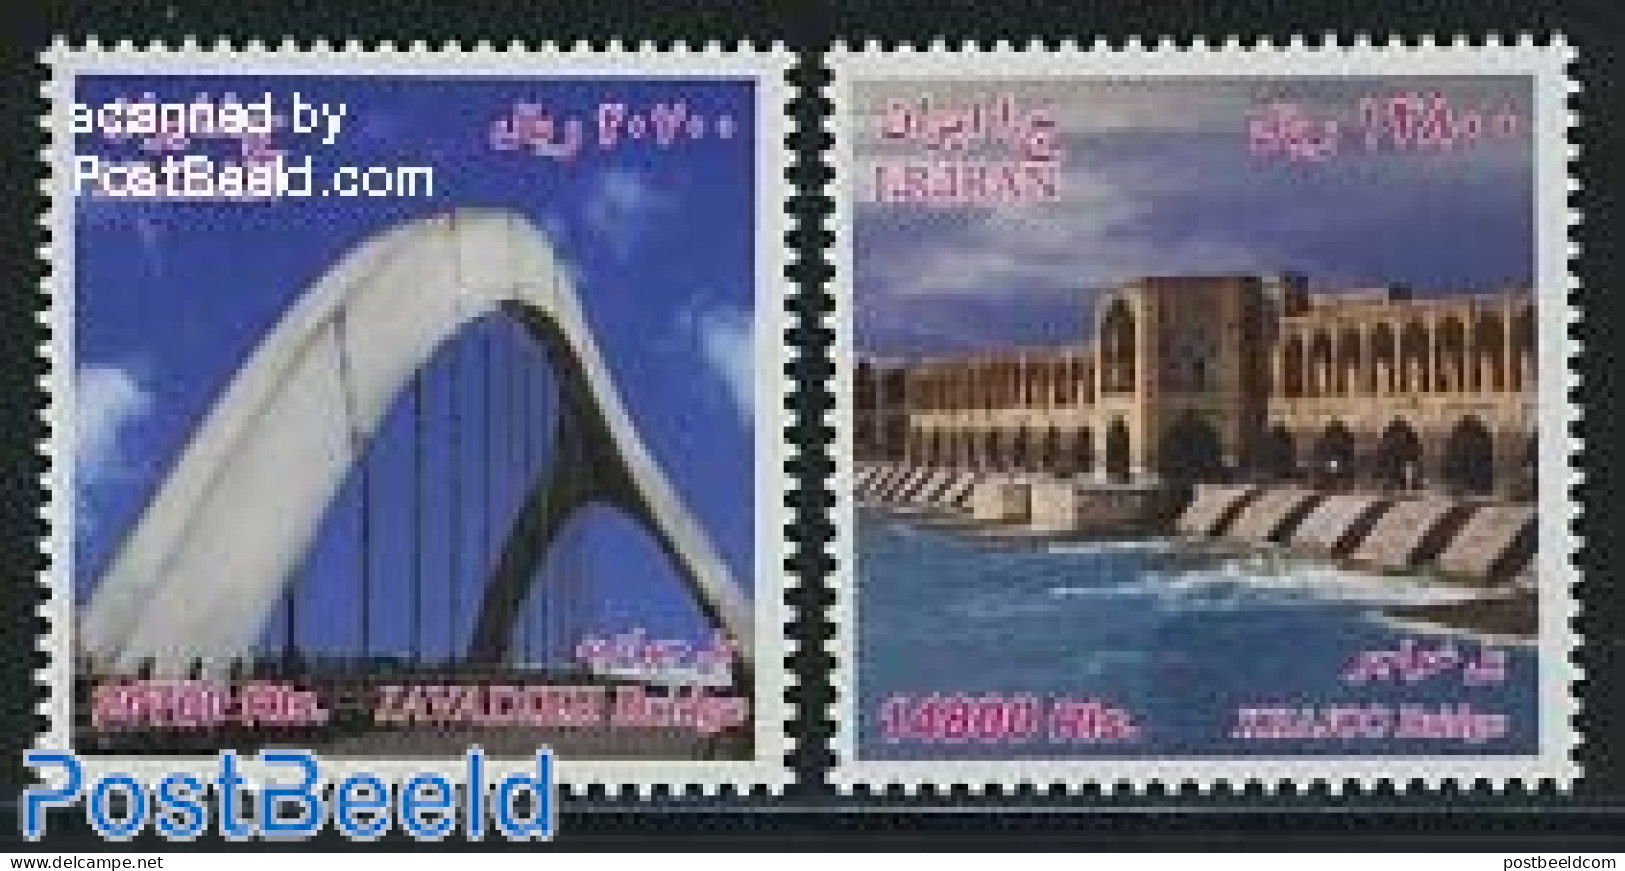 Iran/Persia 2011 Bridges 2v, Mint NH, Bridges And Tunnels - Brücken